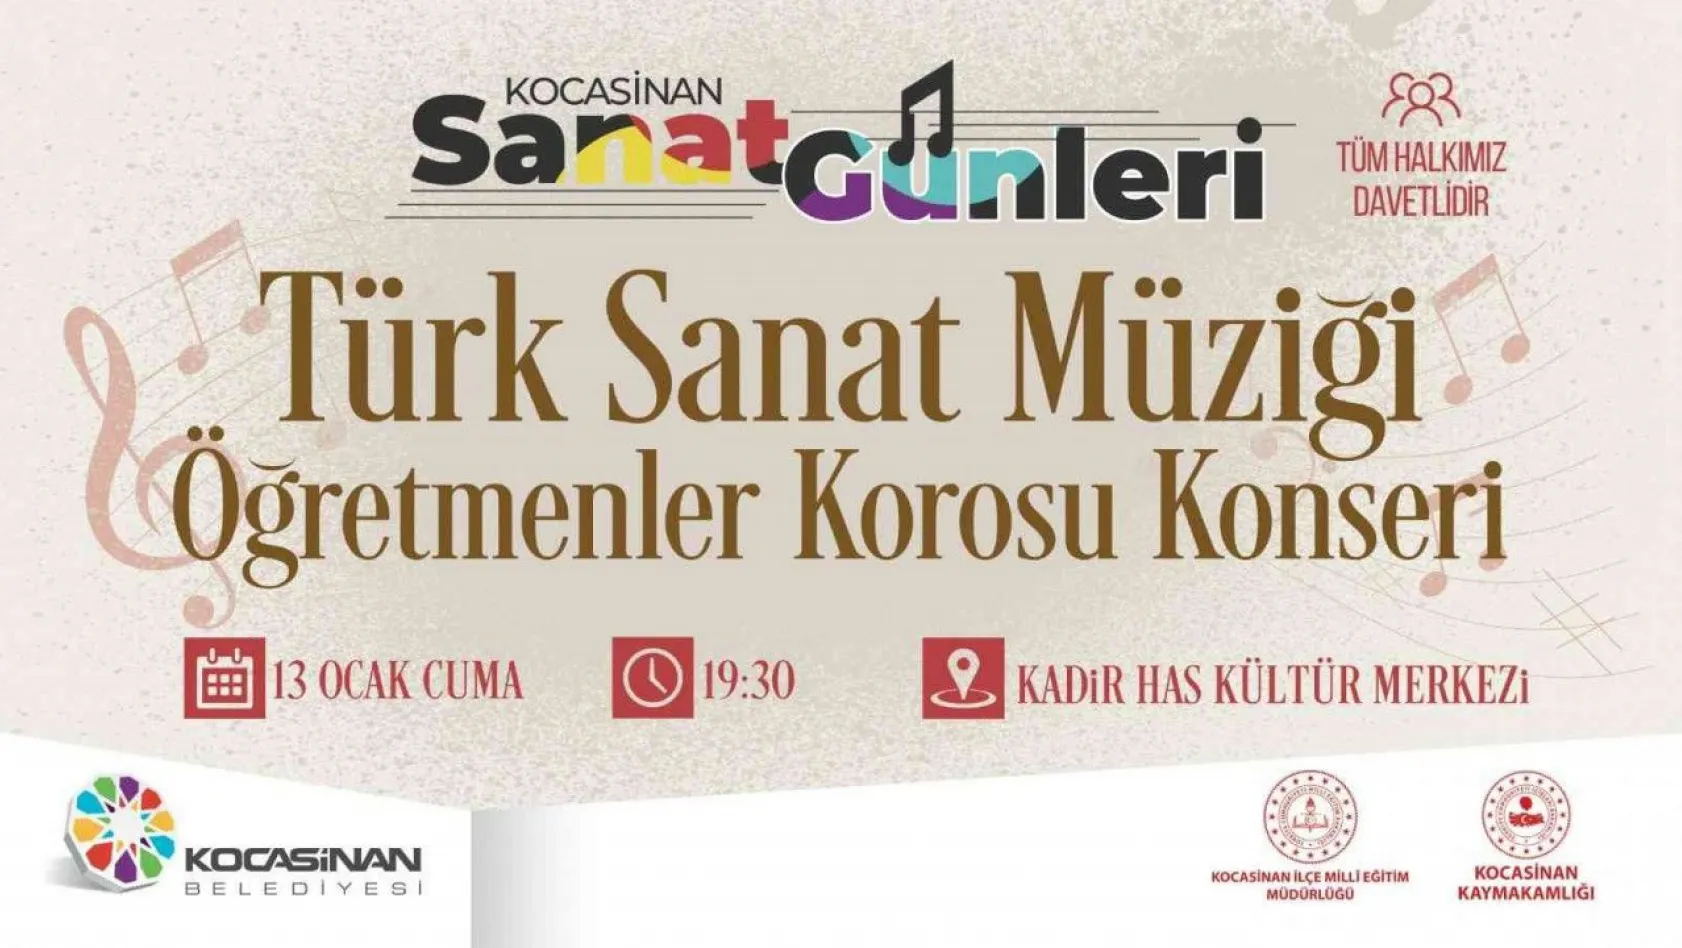 Kocasinan'da Türk Sanat Müziği Gecesi